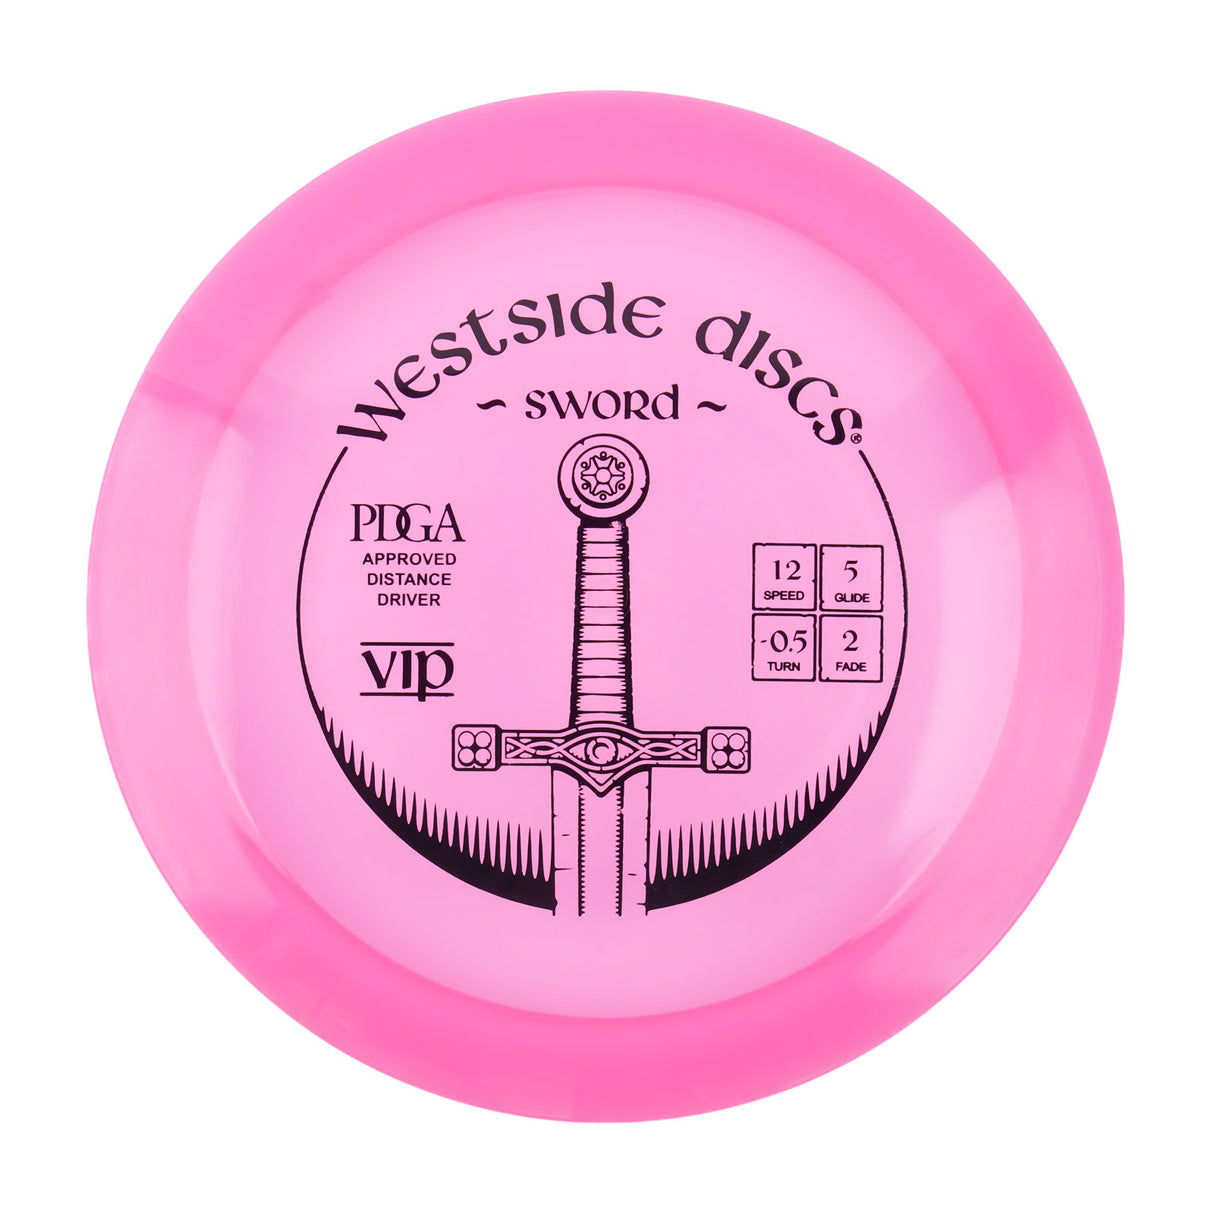 Westside Sword - VIP 174g | Style 0001